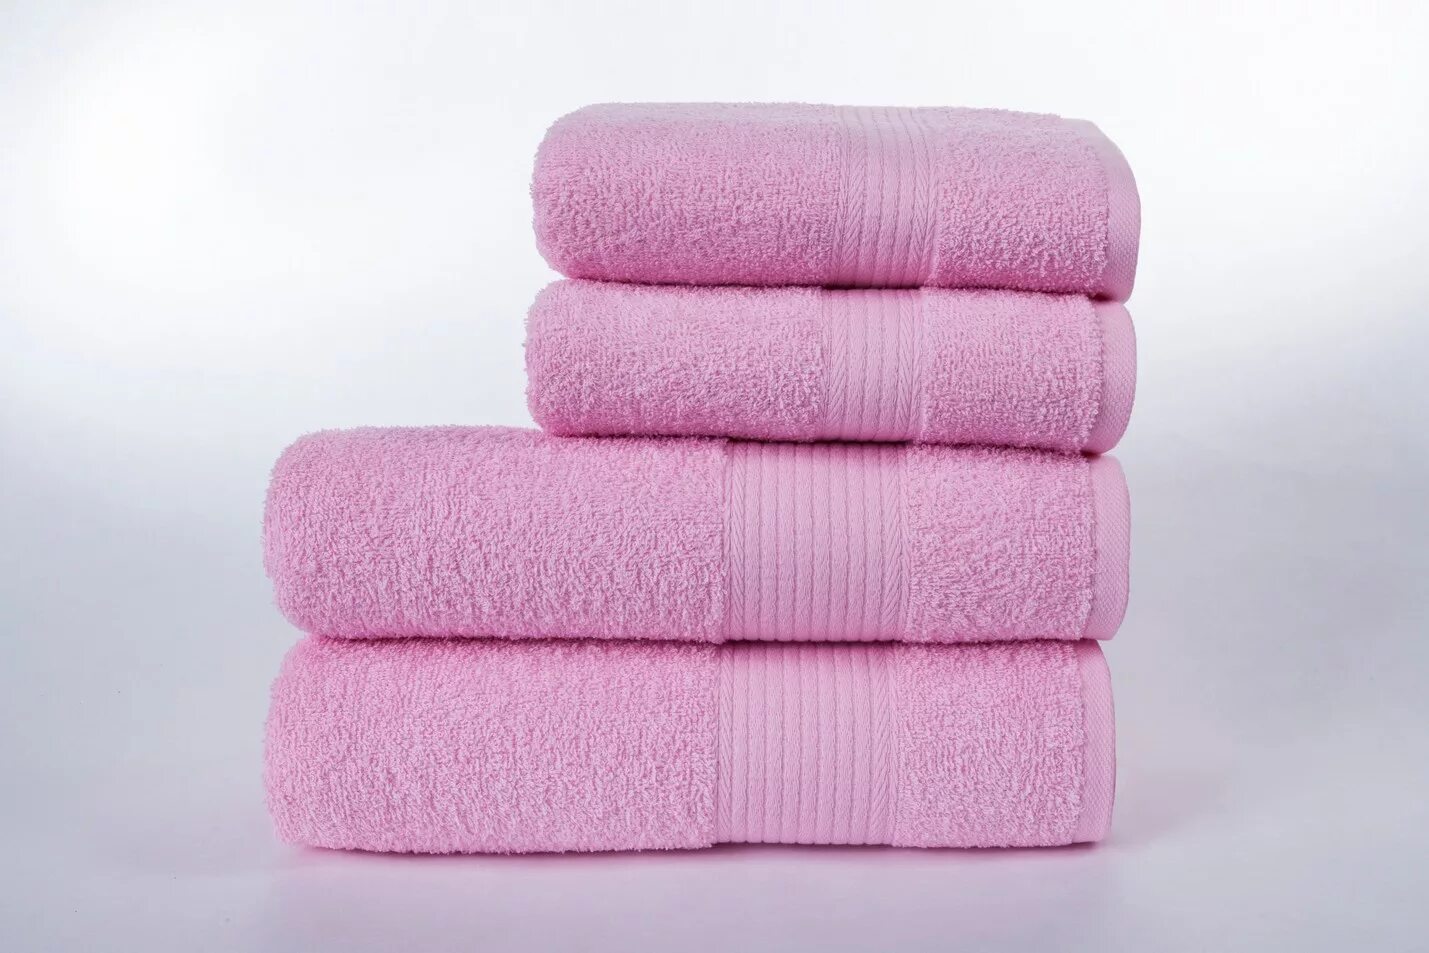 Нежные полотенца. Розовое полотенце. Полотенца китайские фабричные. Полотенце хлопок Varol размер: 50х90, цвет: розовый. Фабрика полотенец в Китае.